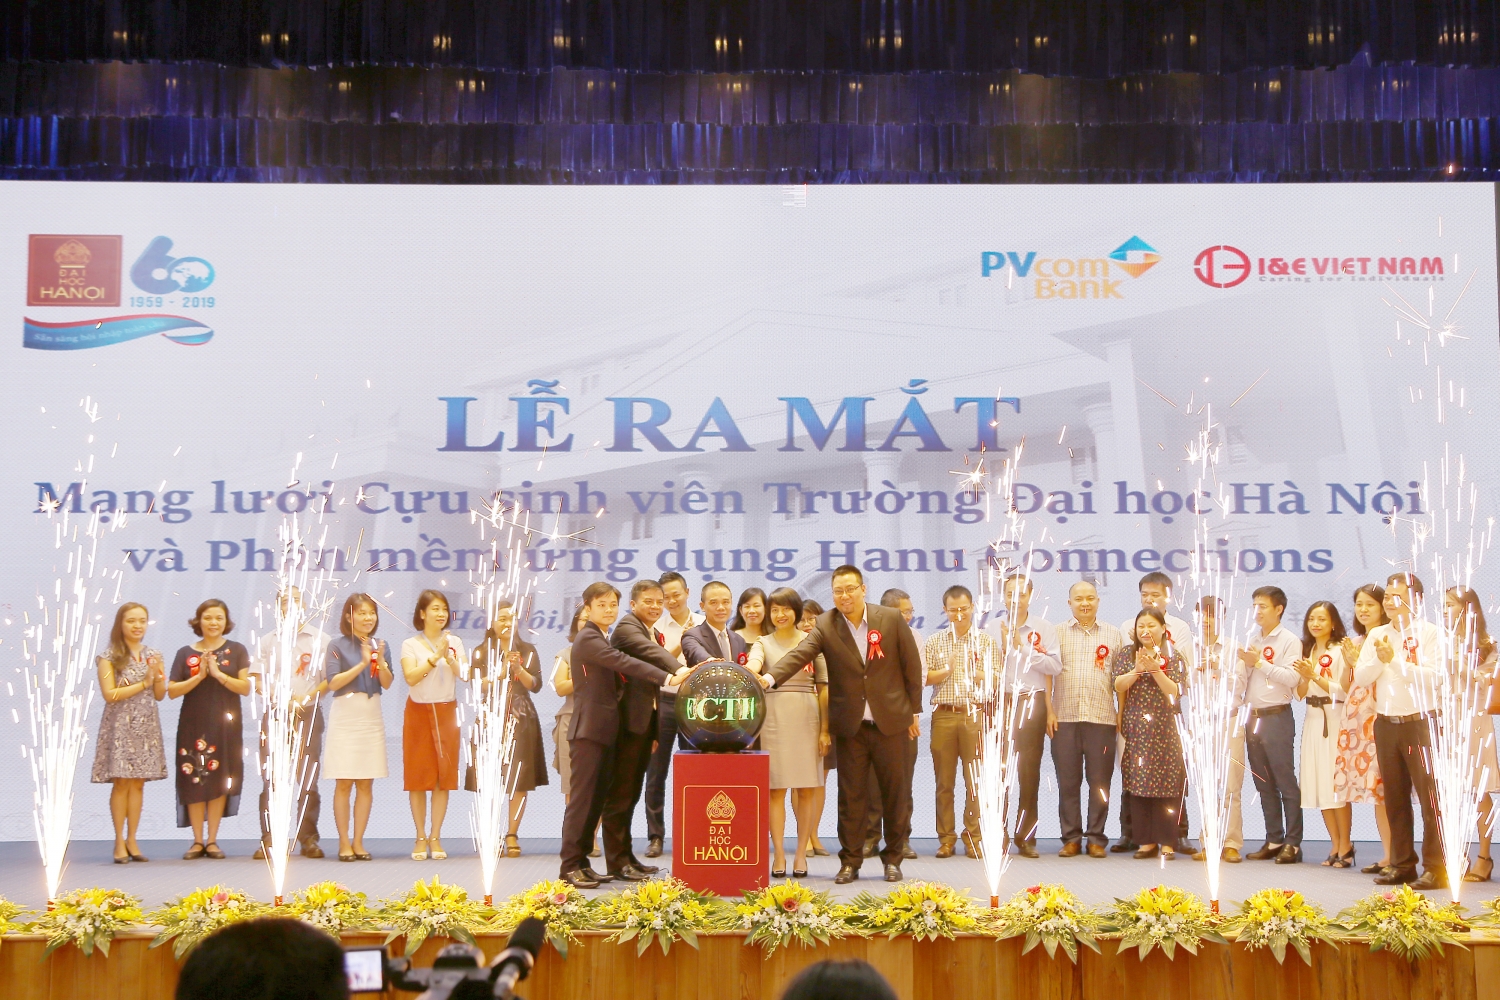 PVcomBank tài trợ Hệ thống kết nối cựu sinh viên trên ứng dụng di động đầu tiên tại Việt Nam